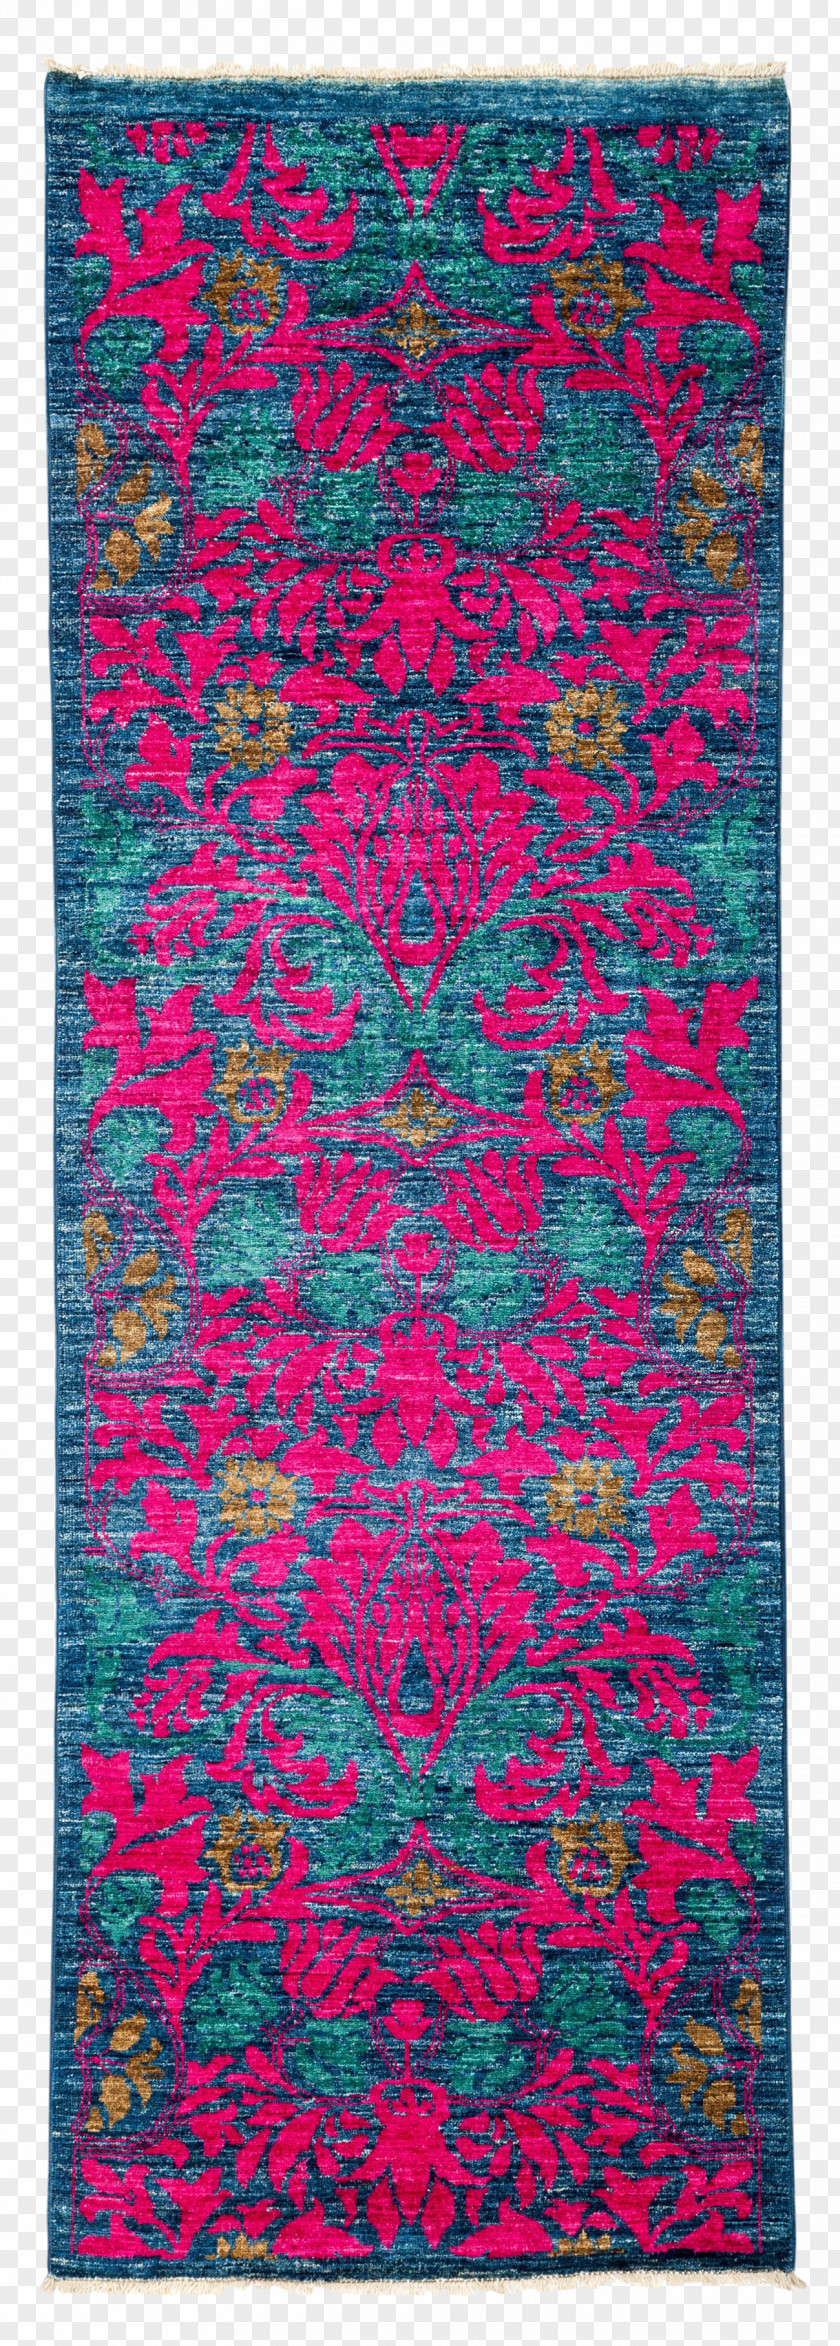 Carpet Textile Area Pink M PNG